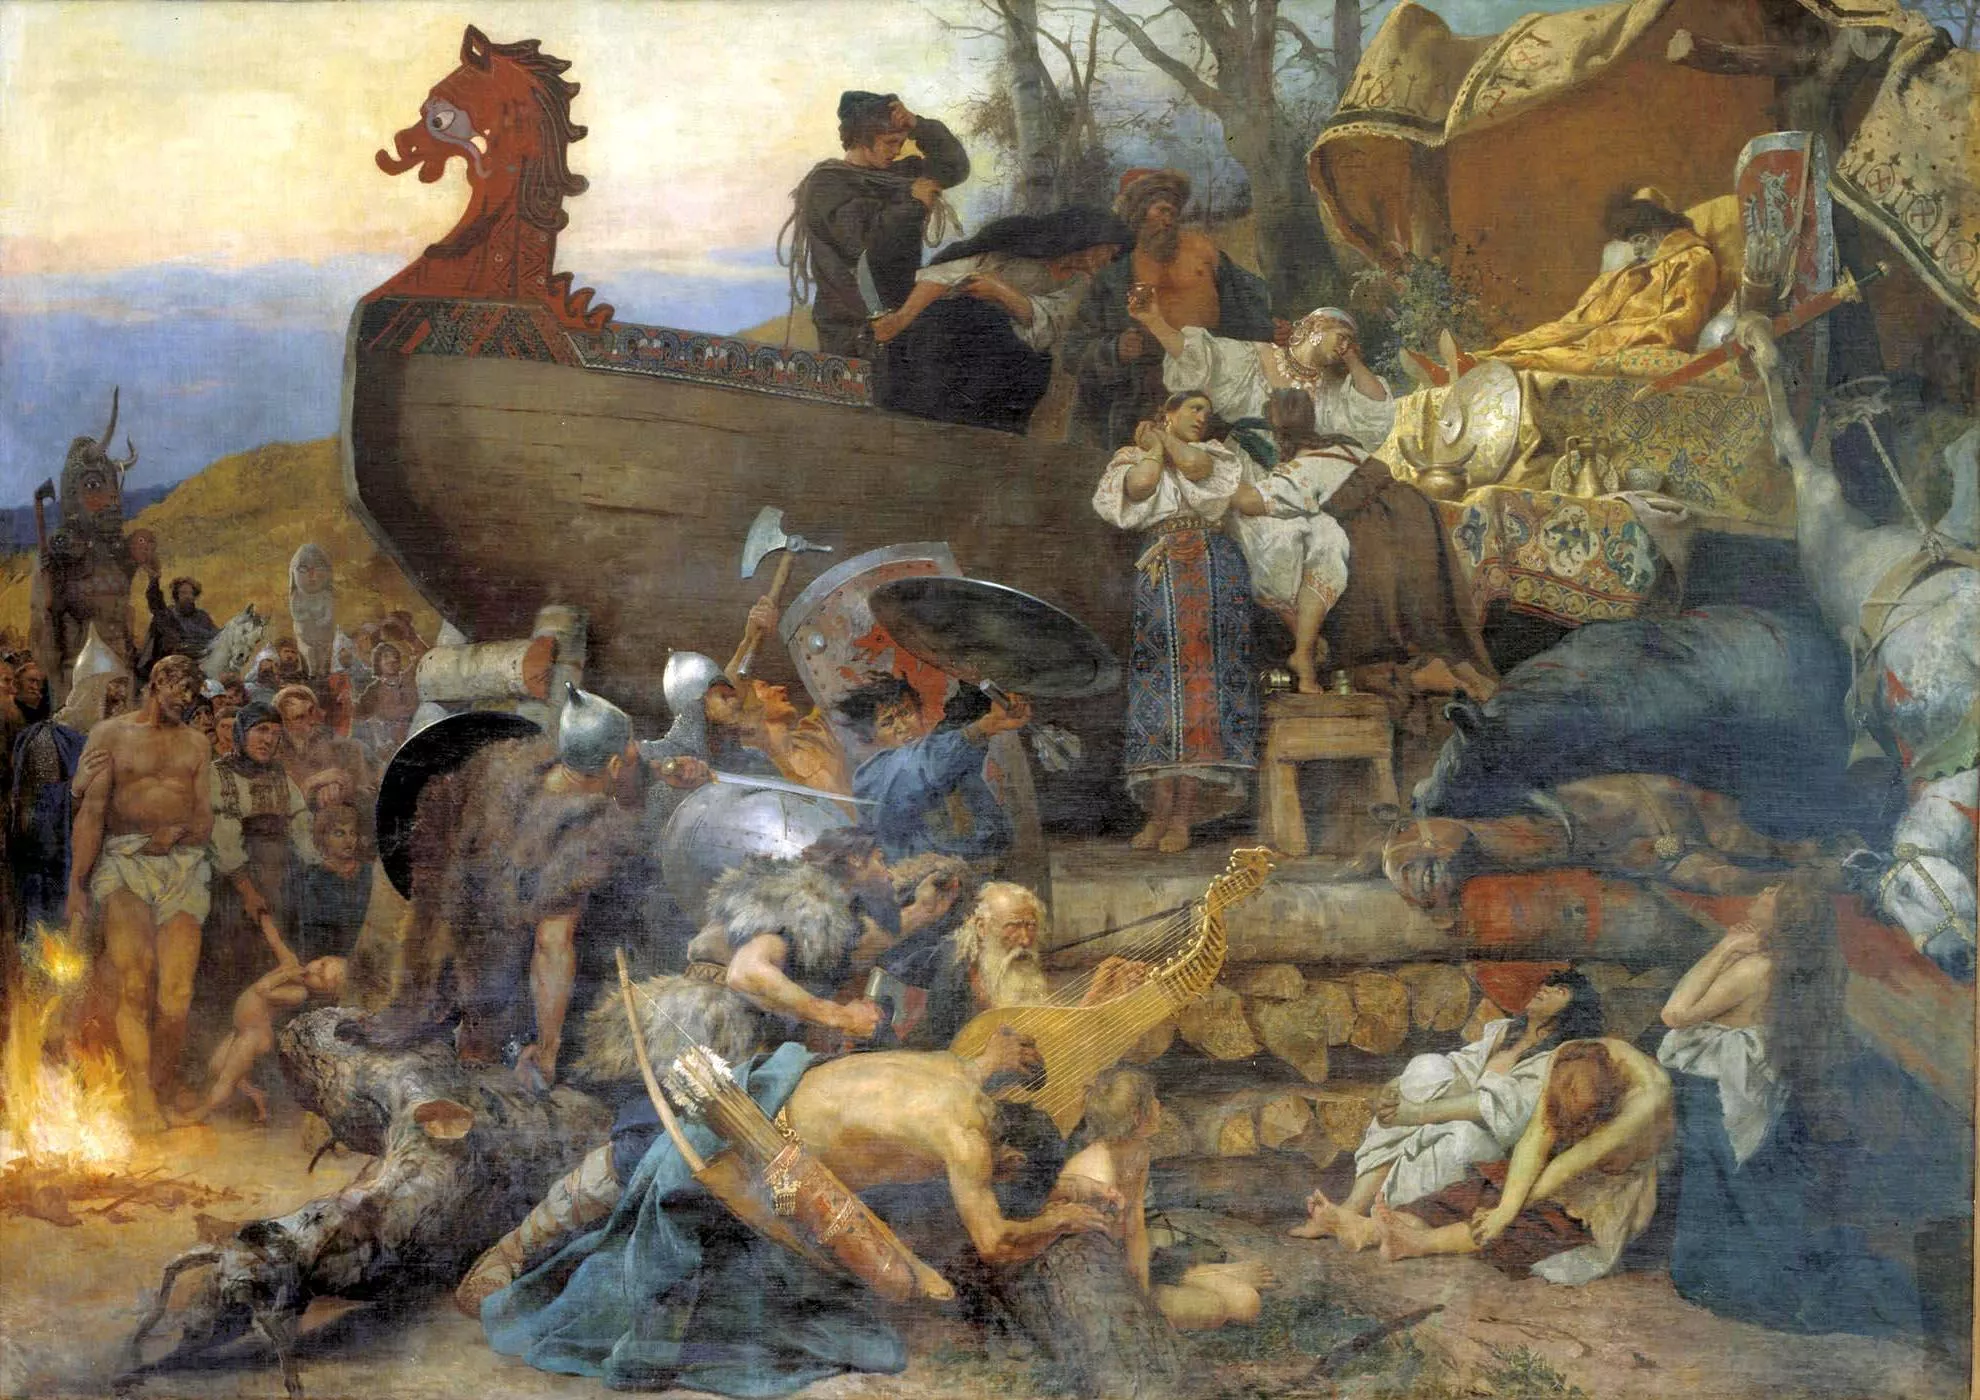 Els vikings van ser grans guerrers i comerciants, però també eren profundament espirituals. En aquesta pintura es recrea el funeral d'Ígor de Kíev